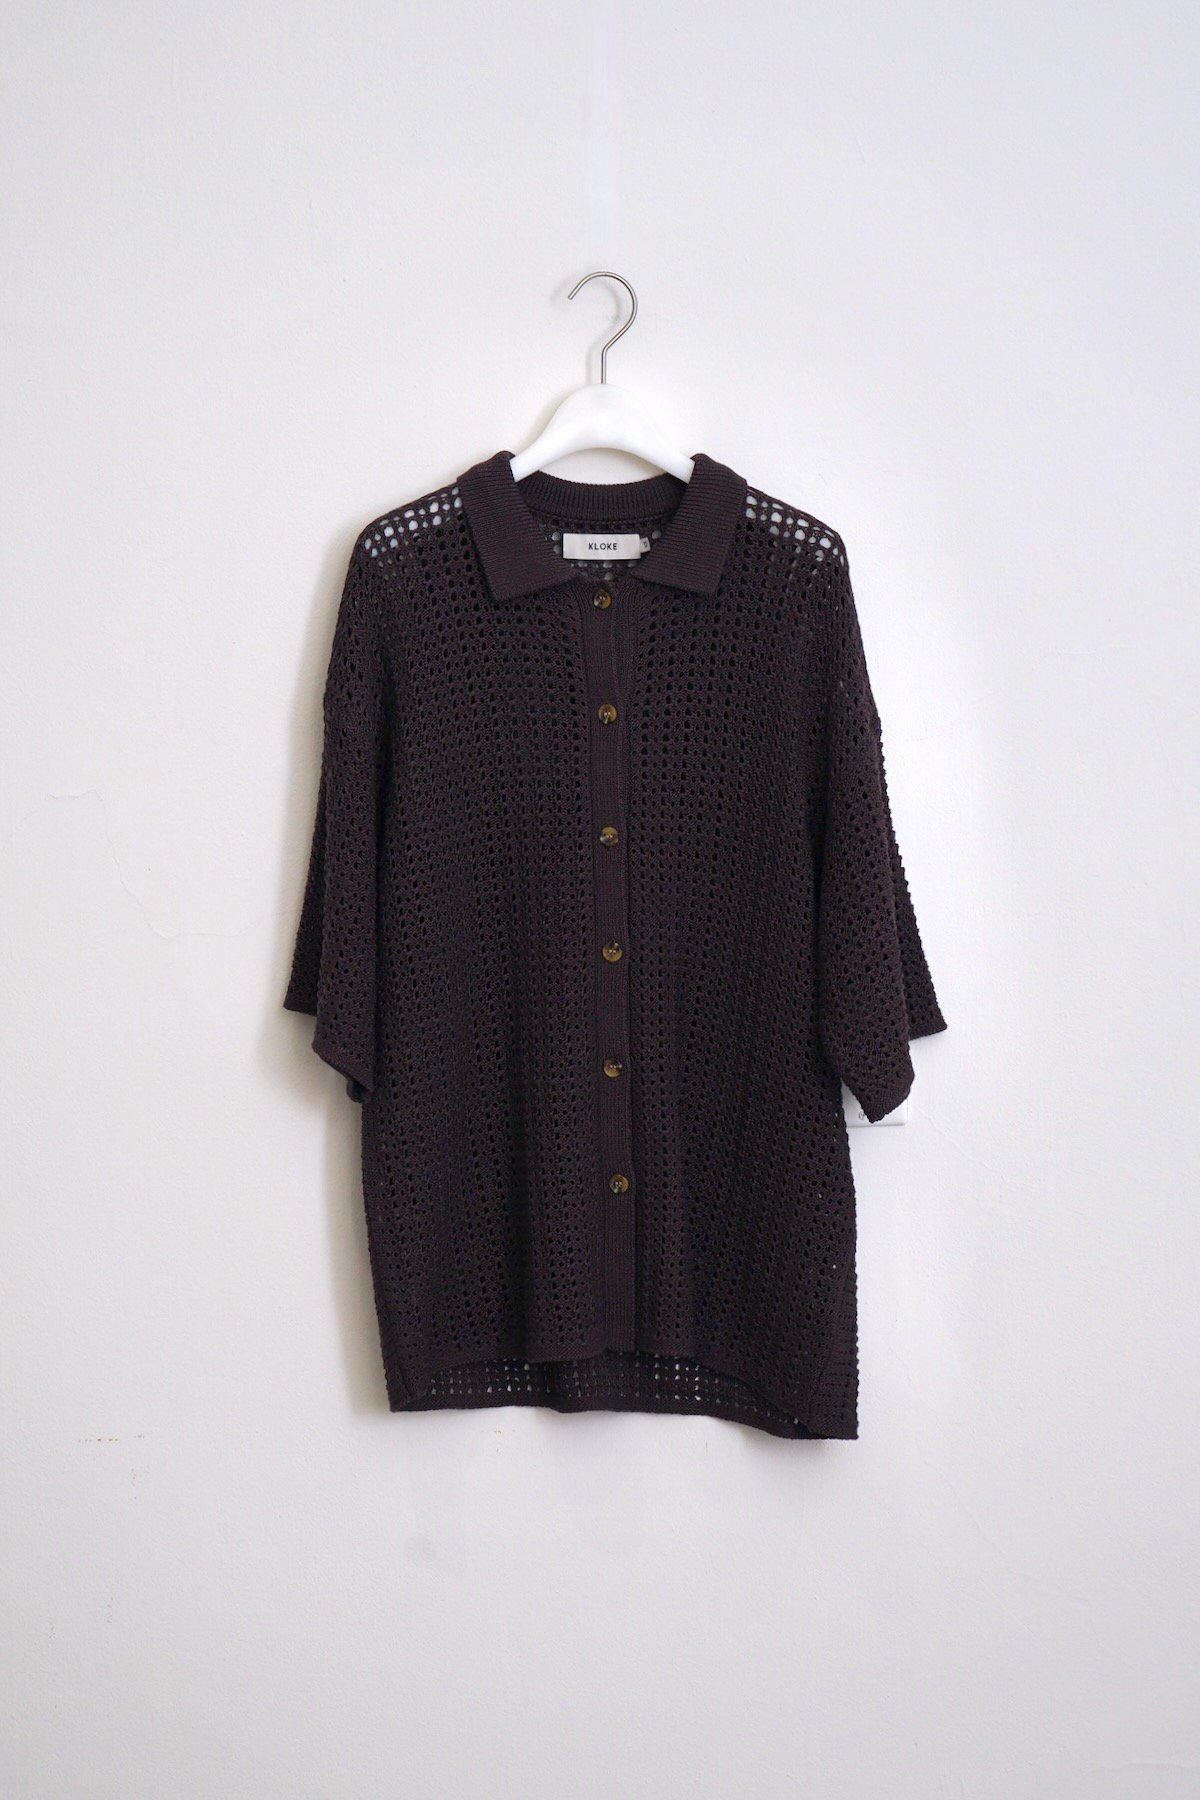 KLOKE / Shallows Knit Shirt / Chocolate